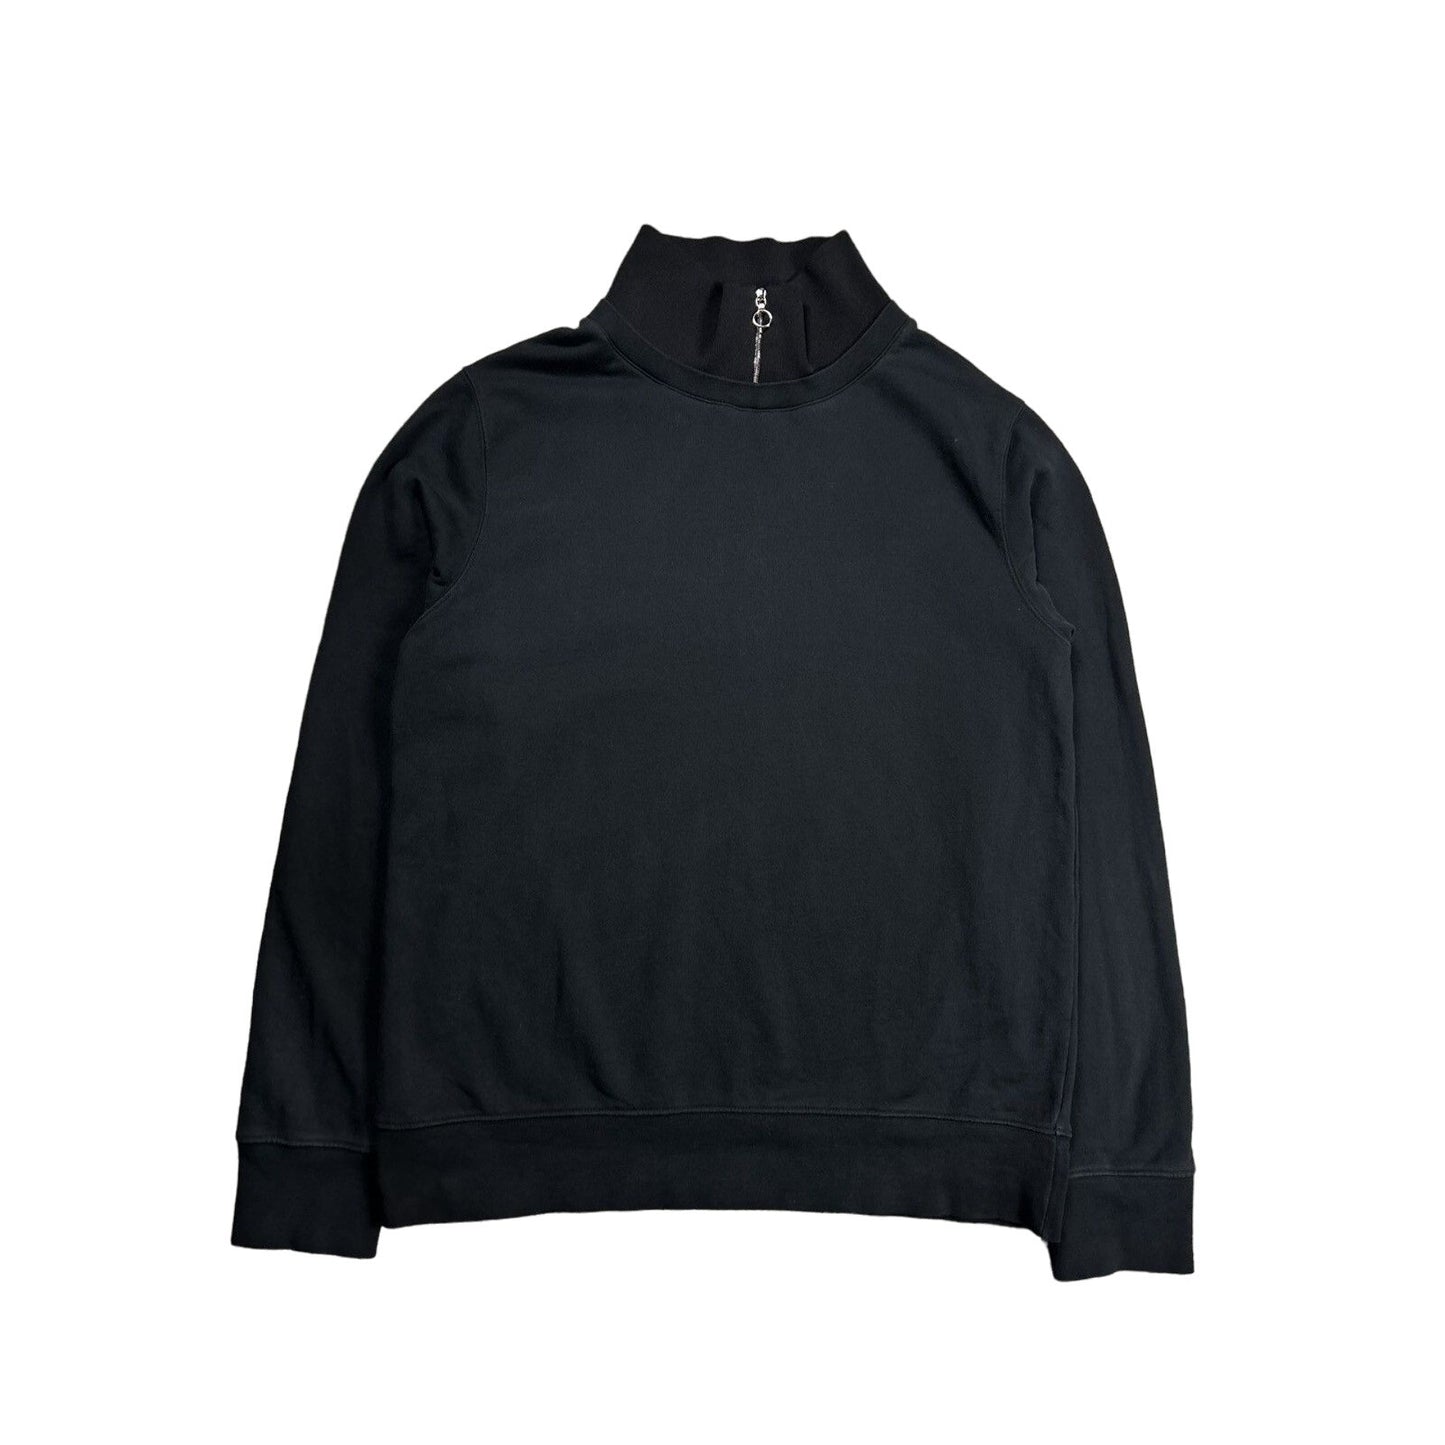 Acne Studios black sweatshirt Fuji preppy paw15 halfzip